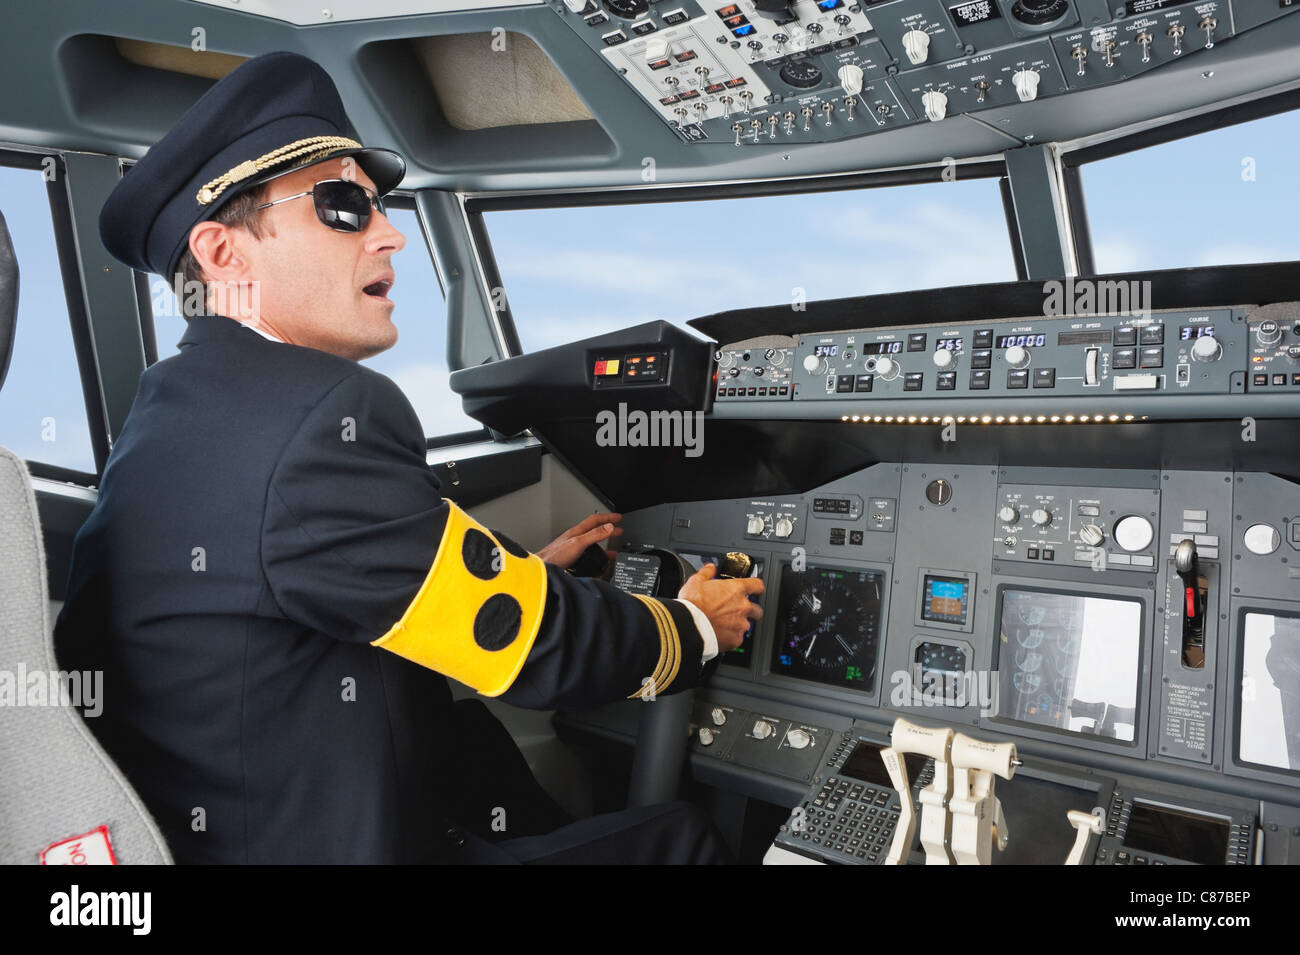 Deutschland, Bayern, München, Pilot mit Armbinde für blinde Pilotierung Flugzeug aus Flugzeug-cockpit Stockfoto